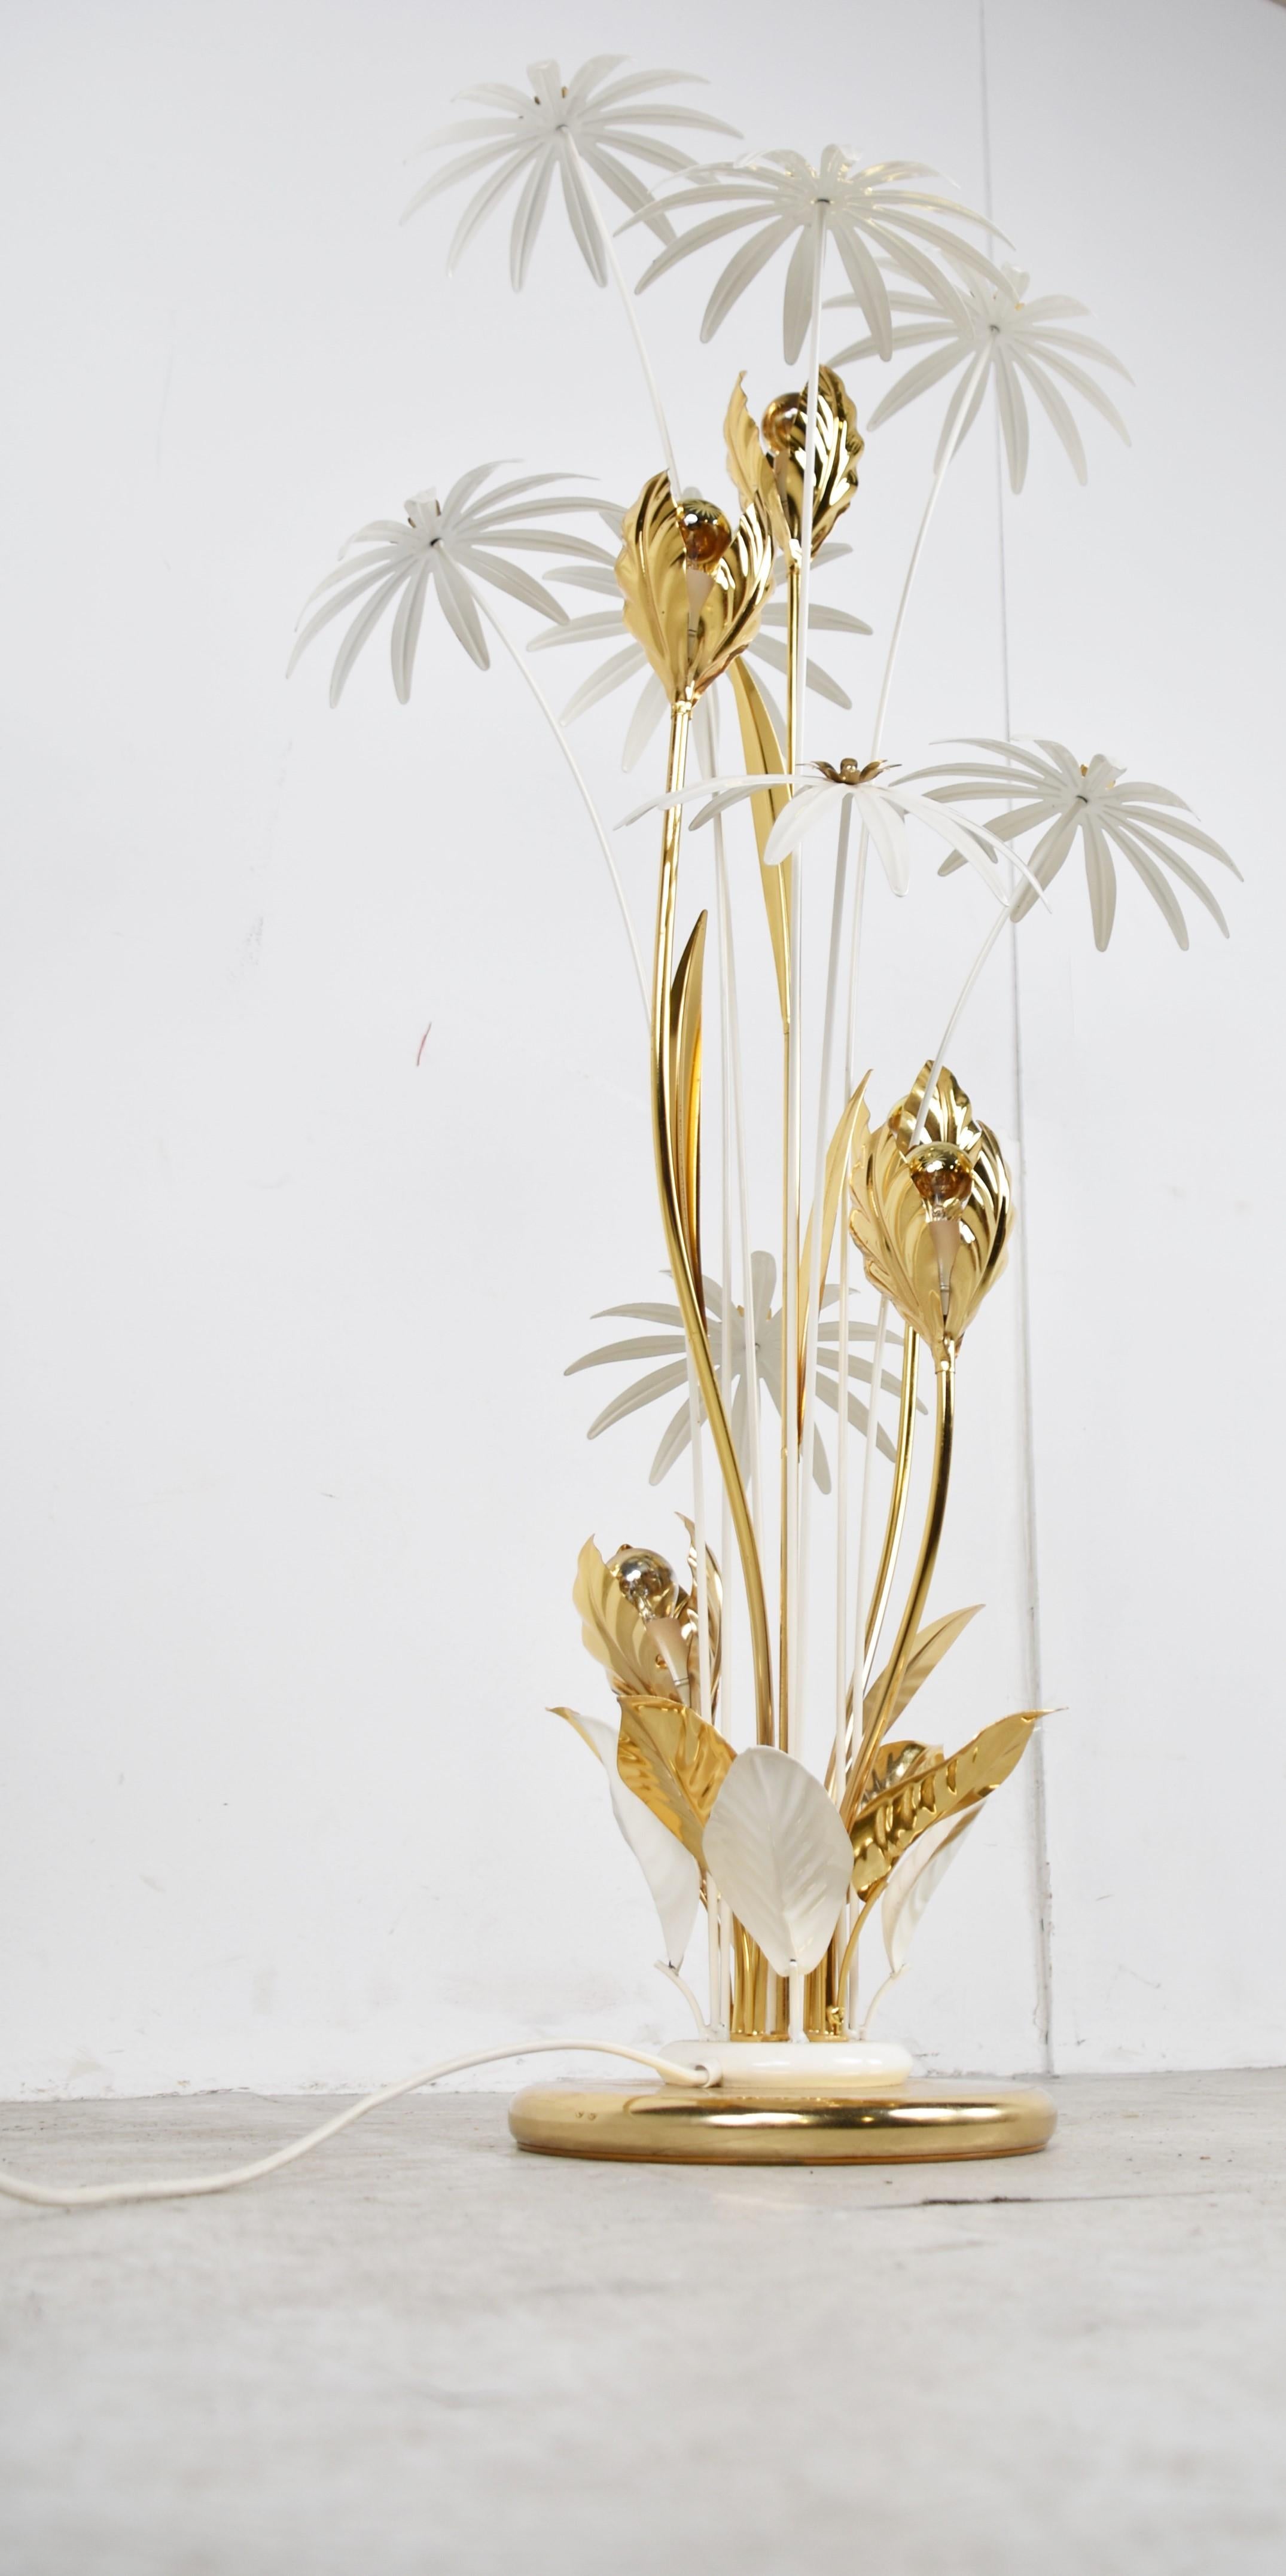 Große Stehlampe von Hans Kögl aus der Zeit des Hollywood Regency.

Die Lampe besteht aus Messing und weiß emaillierten Blumen.

Die Stehlampe strahlt ein wunderbares Licht aus.

Perfekter Zustand.

Wird mit einem Fußschalter geliefert.

Geprüft und